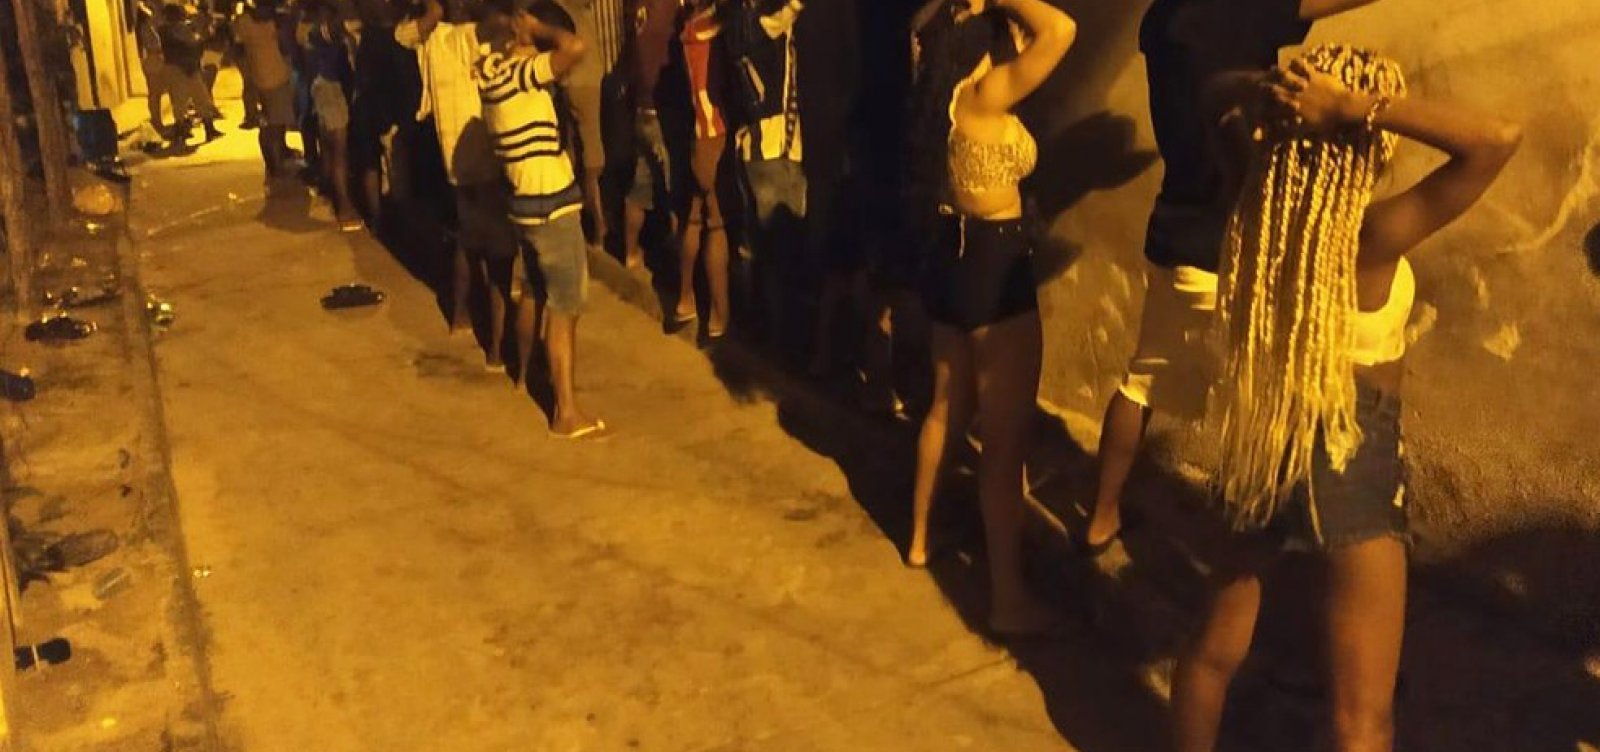 Polícia encerra festa 'paredão' com cerca de 150 pessoas em Lauro de Freitas